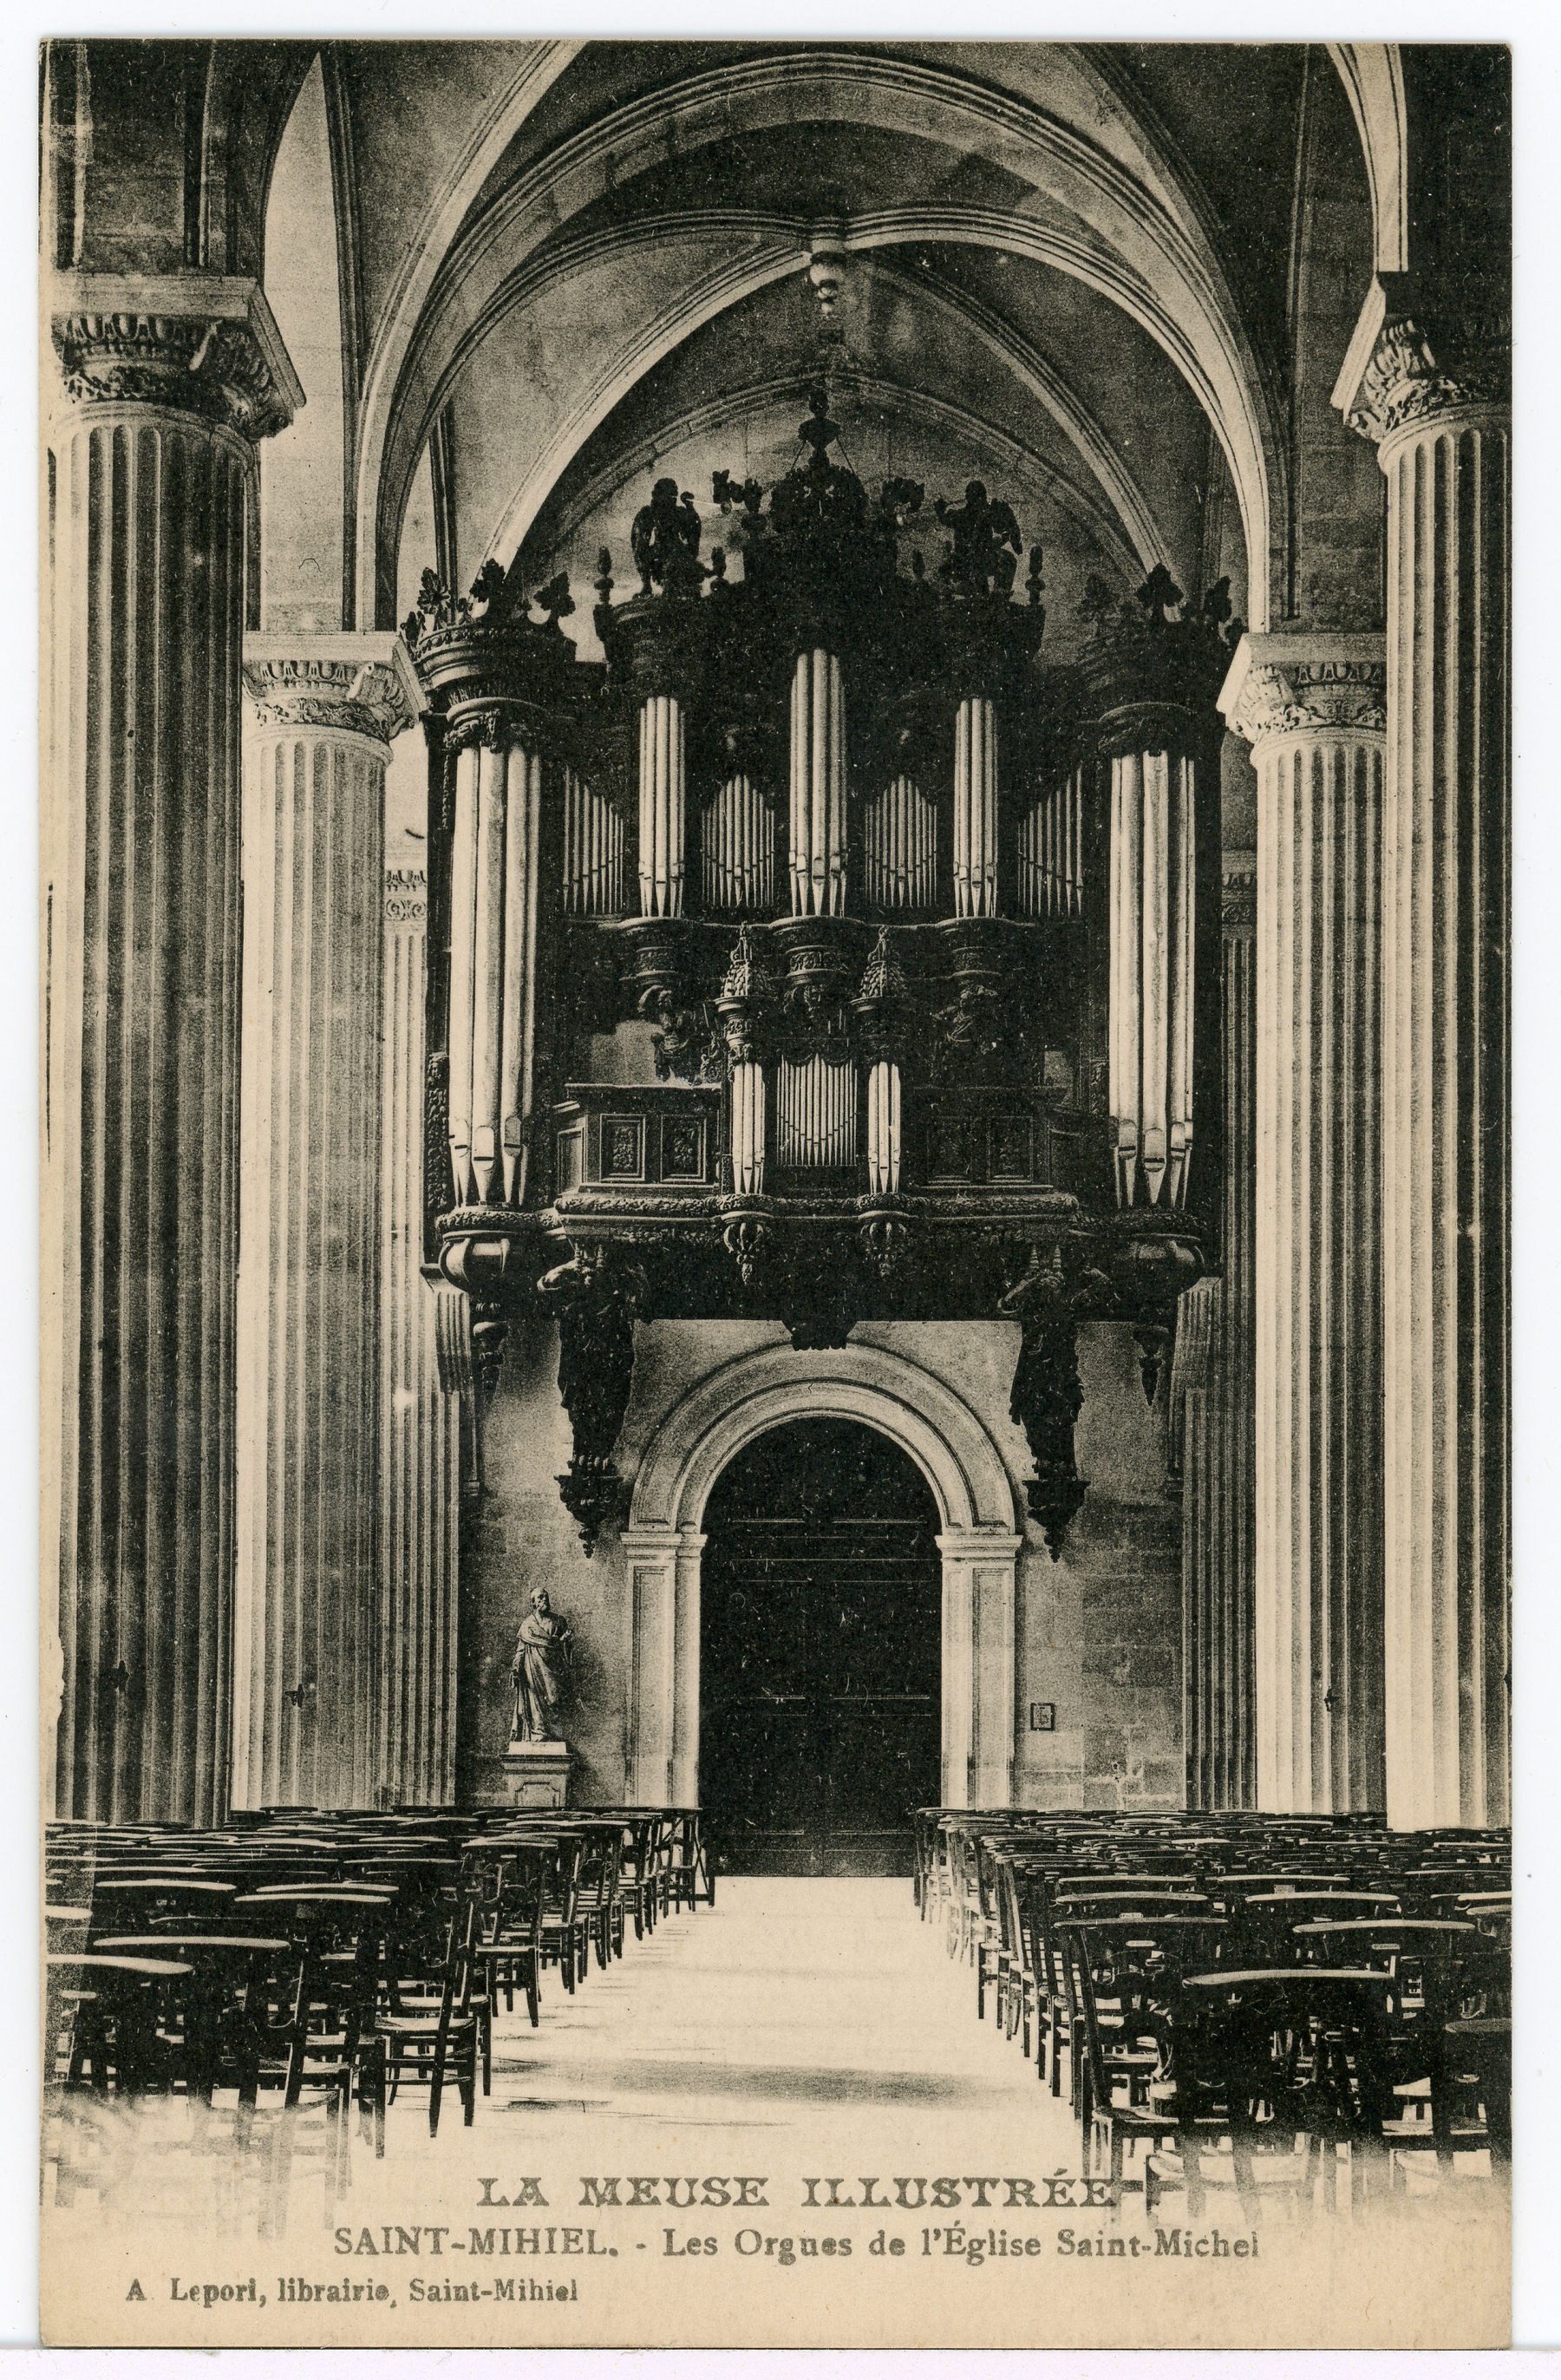 Contenu du Saint-Mihiel. Les orgues de l'église Saint-Michel